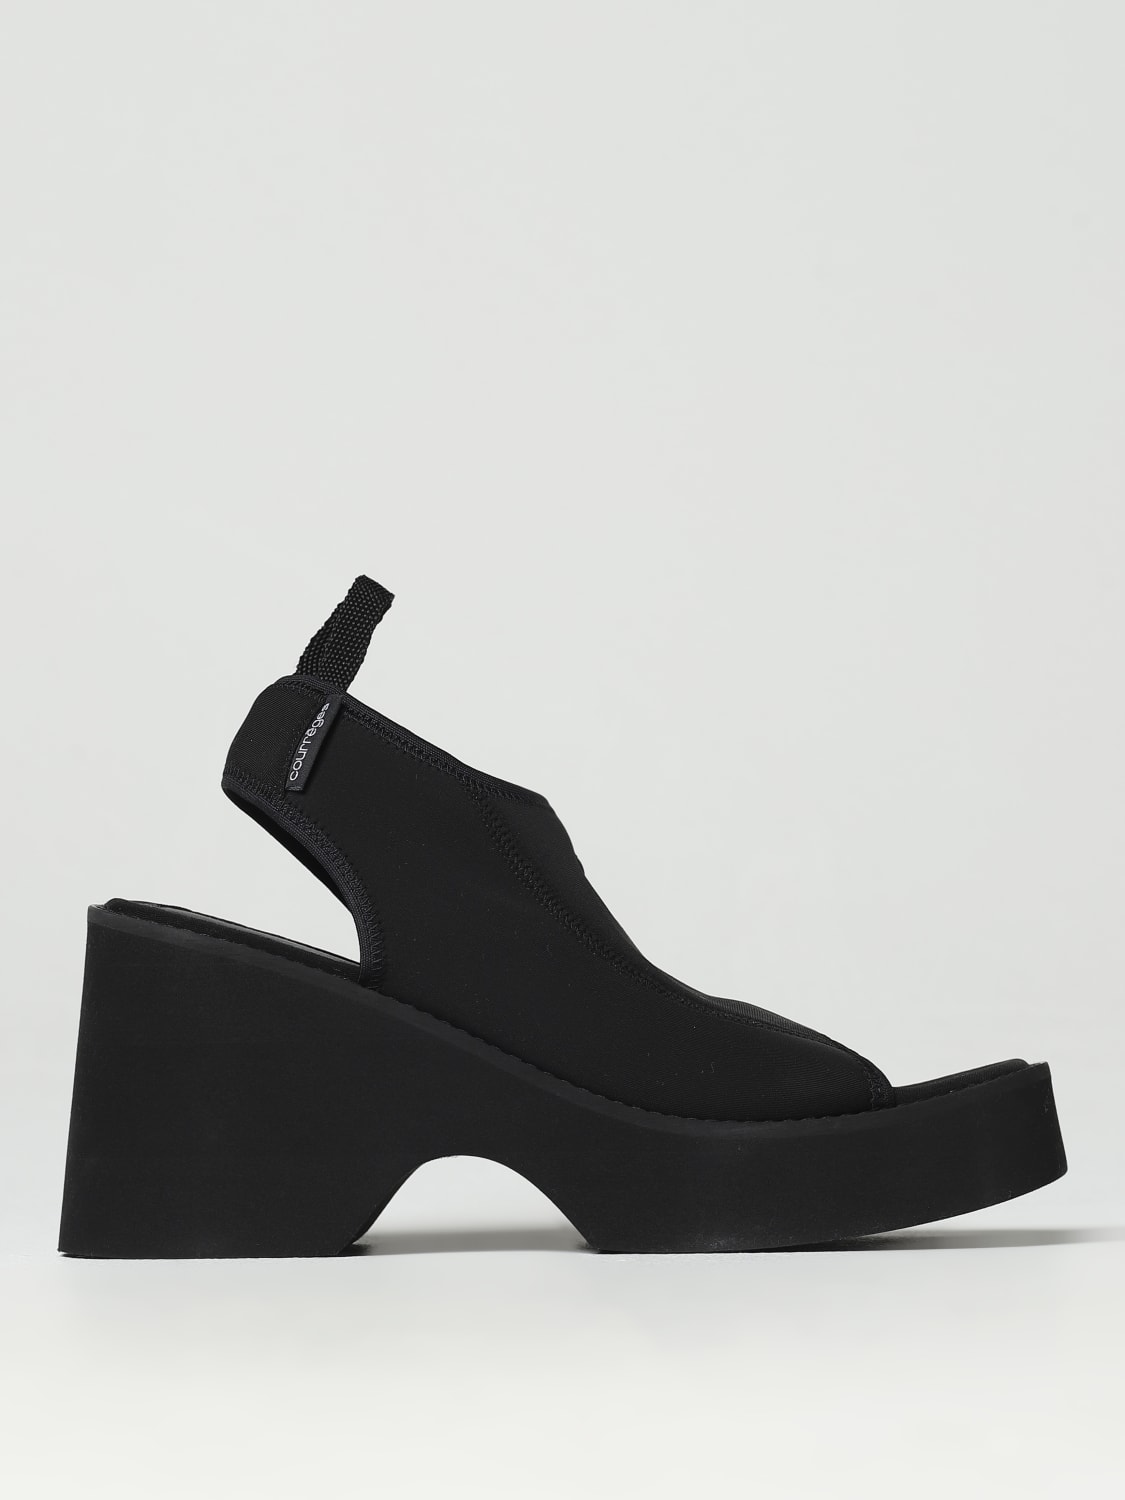 521-Chaussure Femme Compensée-ZTCR Noir » Boutique de chaussure en